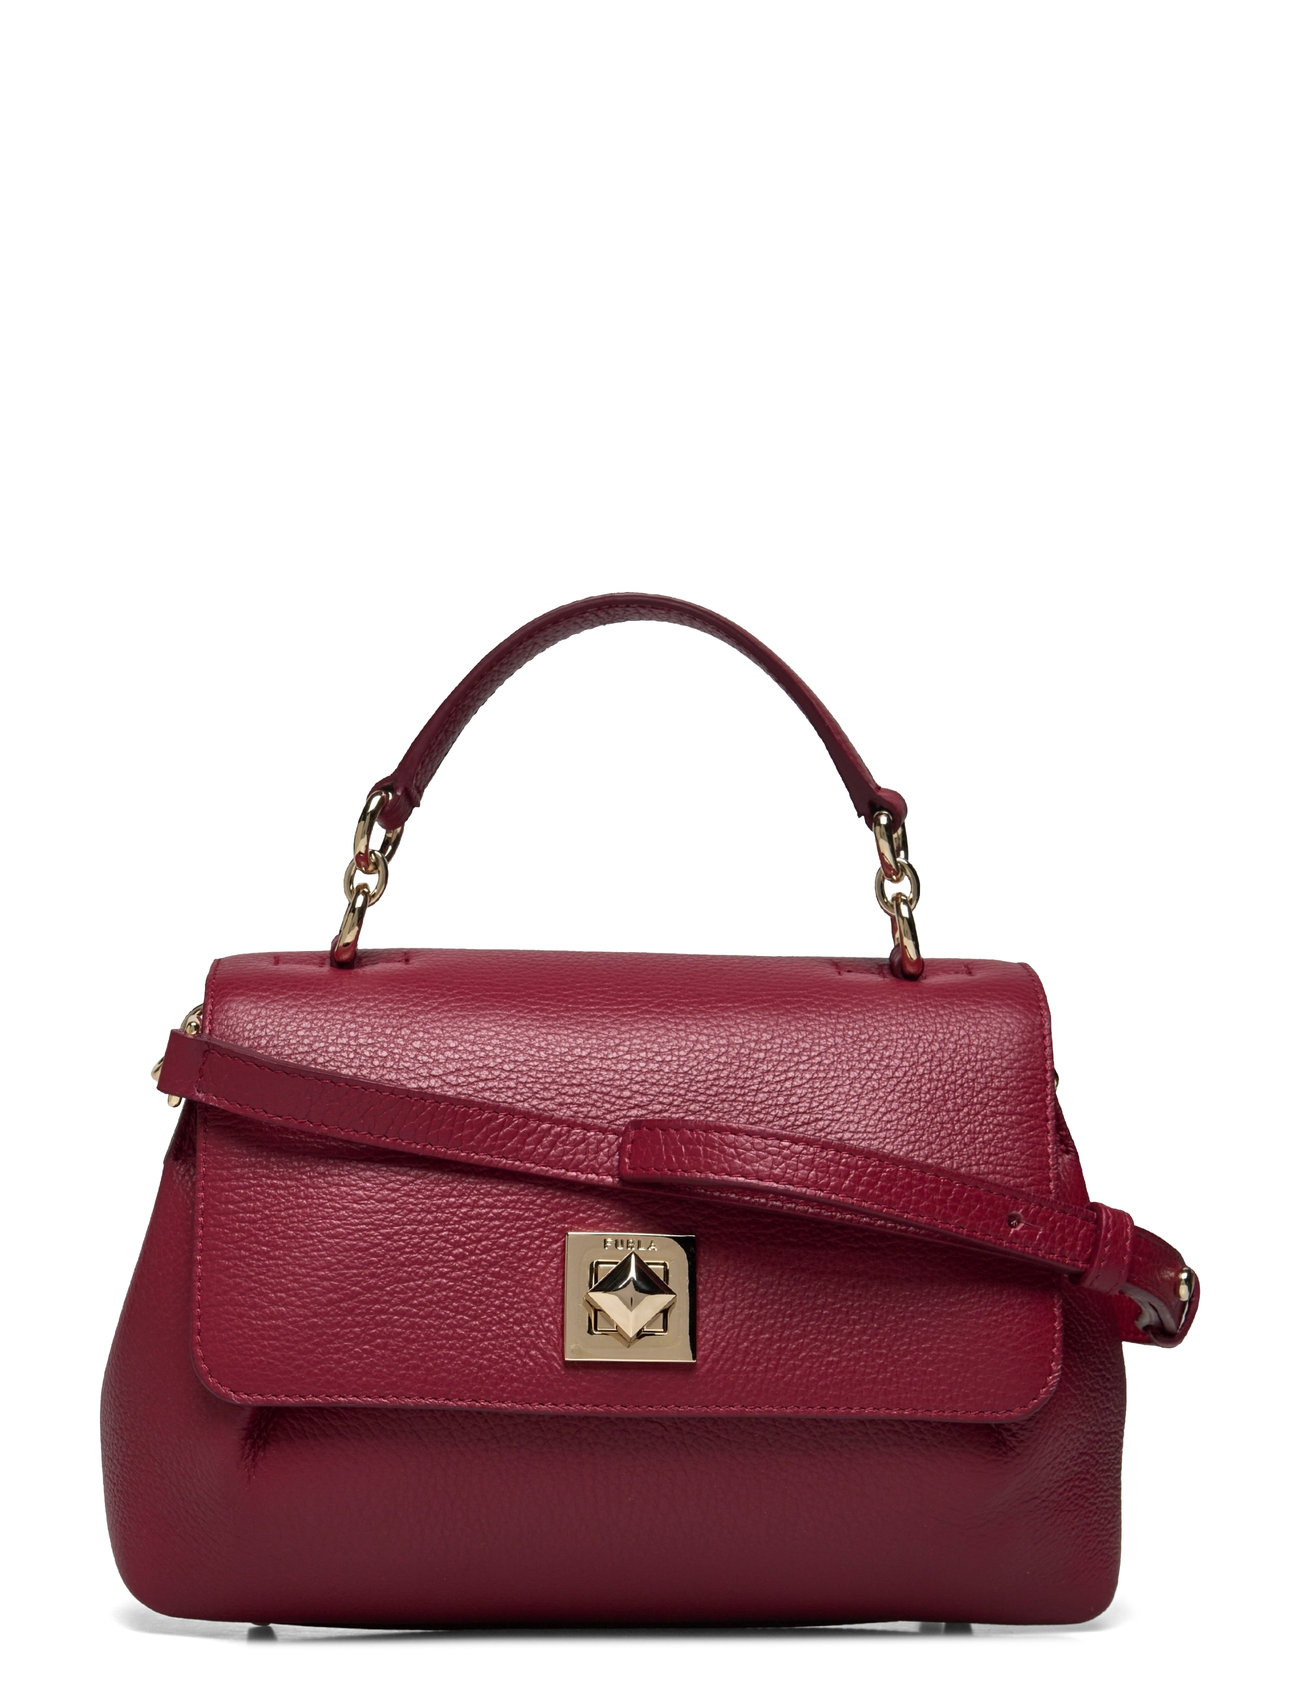 Furla Paloma S Top Handle Bags Small Shoulder Bags-crossbody Bags Burgundy Furla